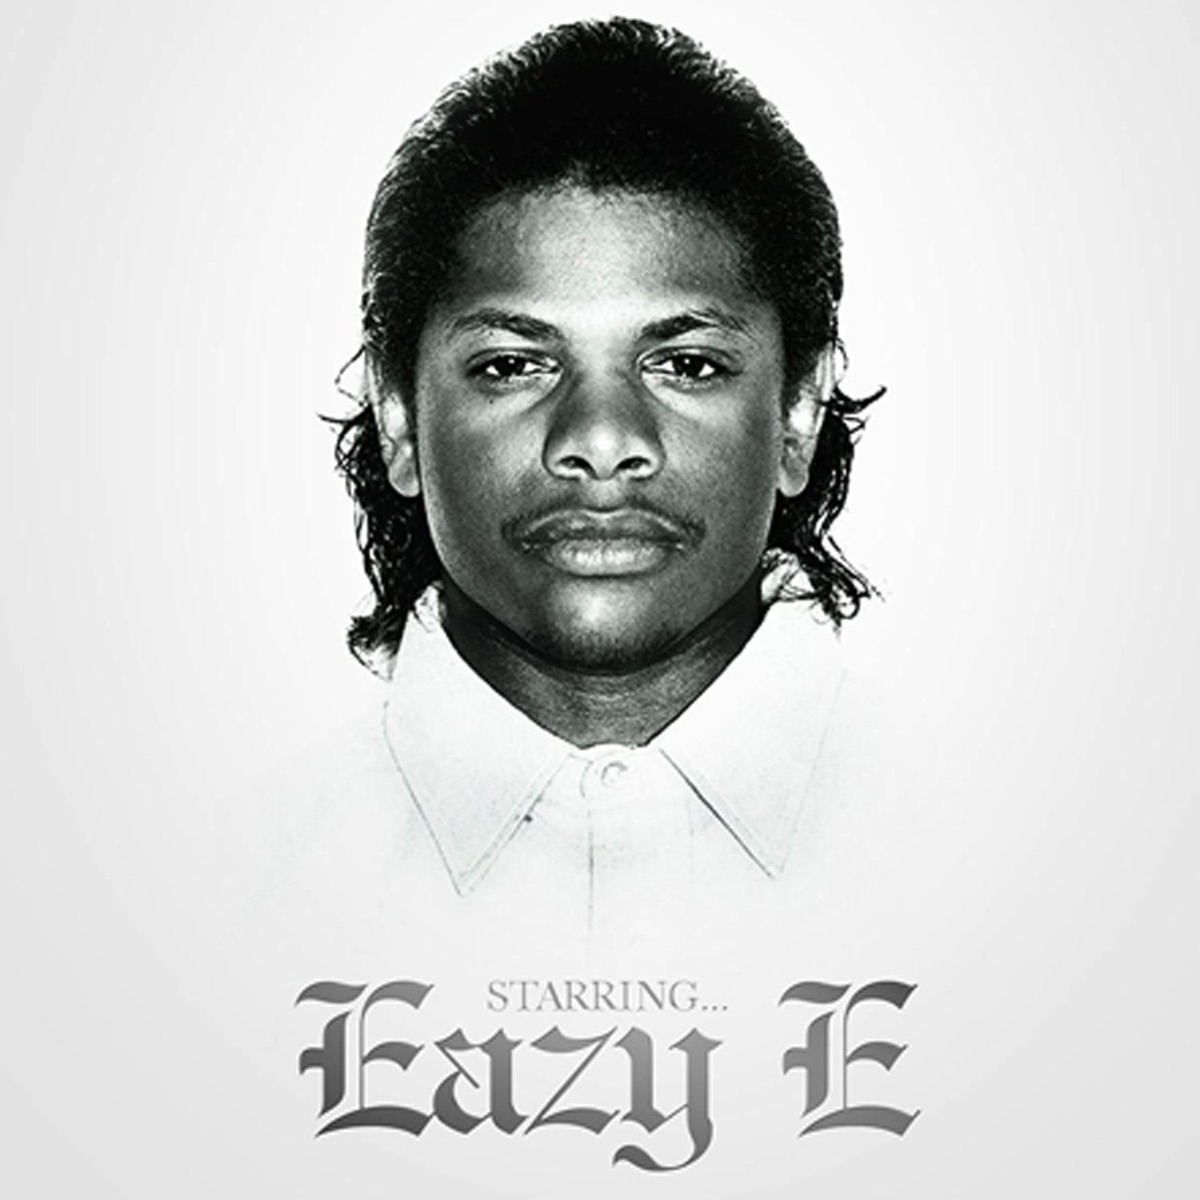 Starring Eazy E - Album by Eazy-E - Apple Music